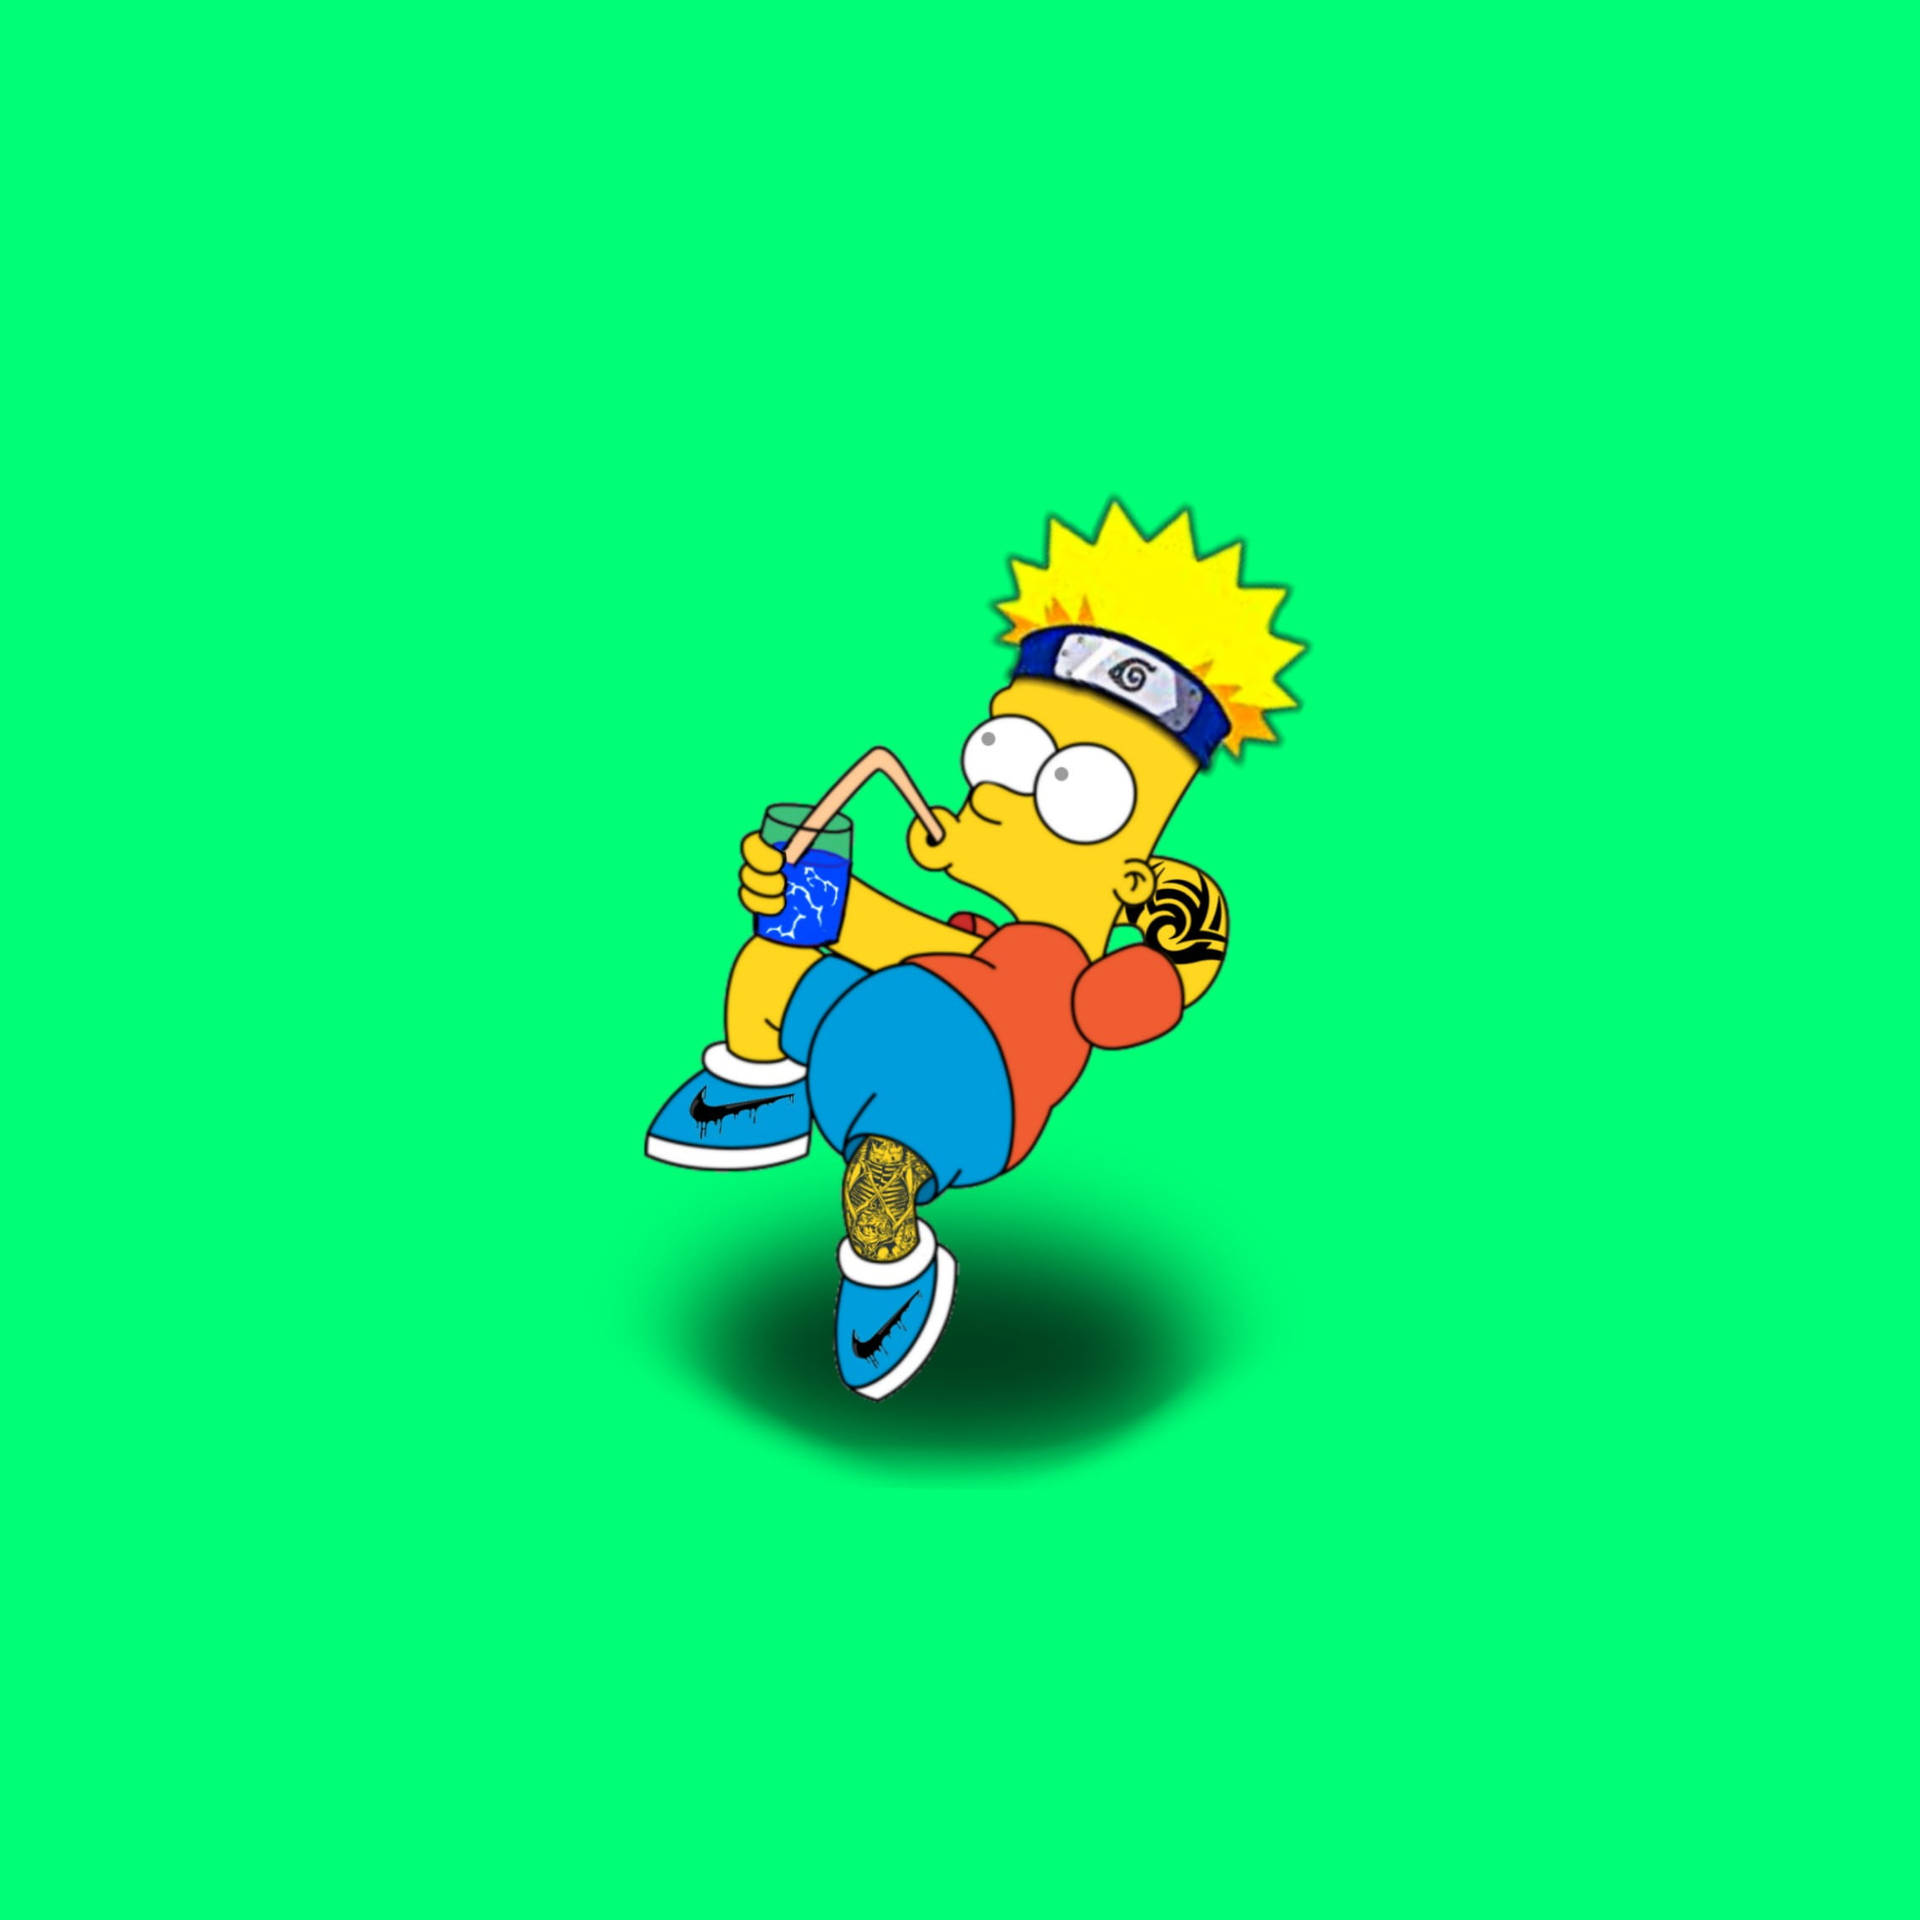 Nikefigurer I All Slags Underhållning Har Varit Något Av En Favorit För Dator- Och Mobilskärmsbakgrunder. Och Vad Kan Vara Mer Roligt Än Att Kombinera Nike-logotypen Med En Av De Mest Populära Animerade Tv-karaktärerna Genom Tiderna, Bart Simpson? Här Är En Nike-karikatyr-drinkande-bart-simpson Tapet Som Är Perfekt För Alla Sport- Och Simpsons-fans Där Ute! Wallpaper